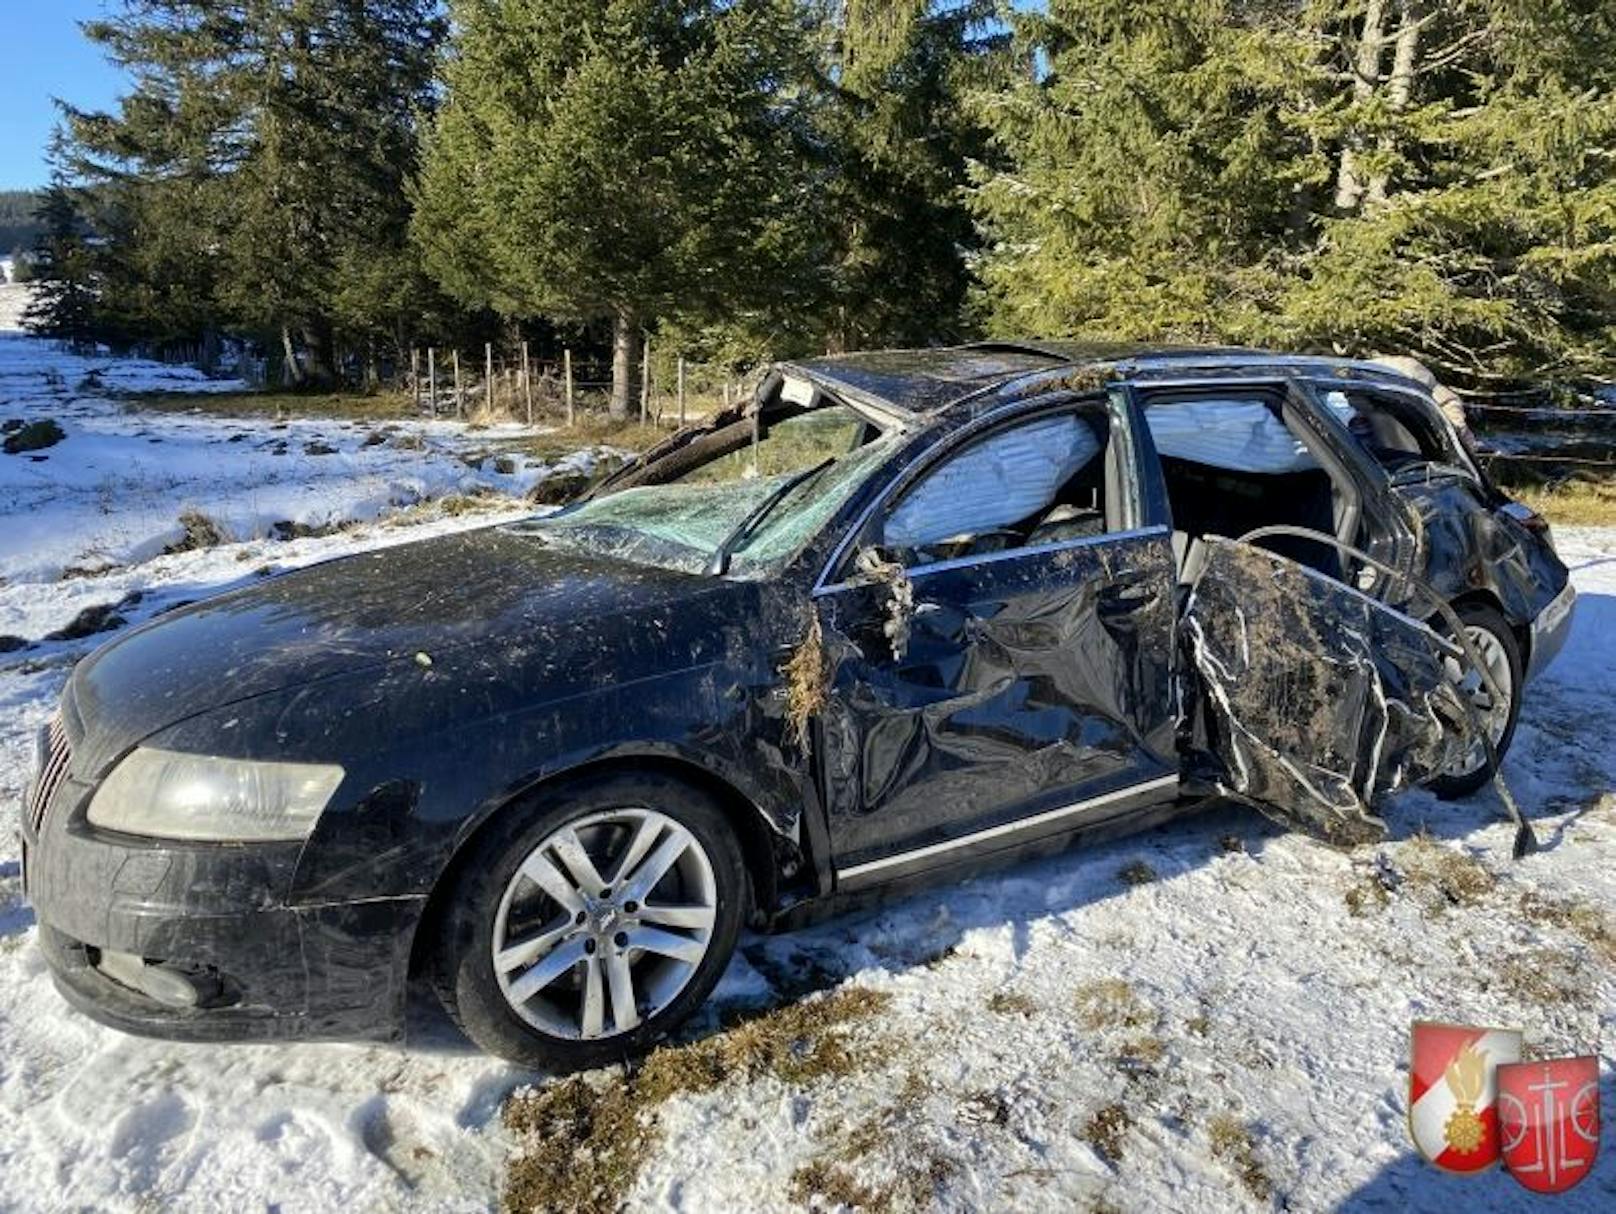 Samstagnachmittag kam ein 18-Jähriger mit seinem Audi von Fahrbahn ab und überschlug sich. Er und ein Beifahrer wurden unbestimmten Grades verletzt.